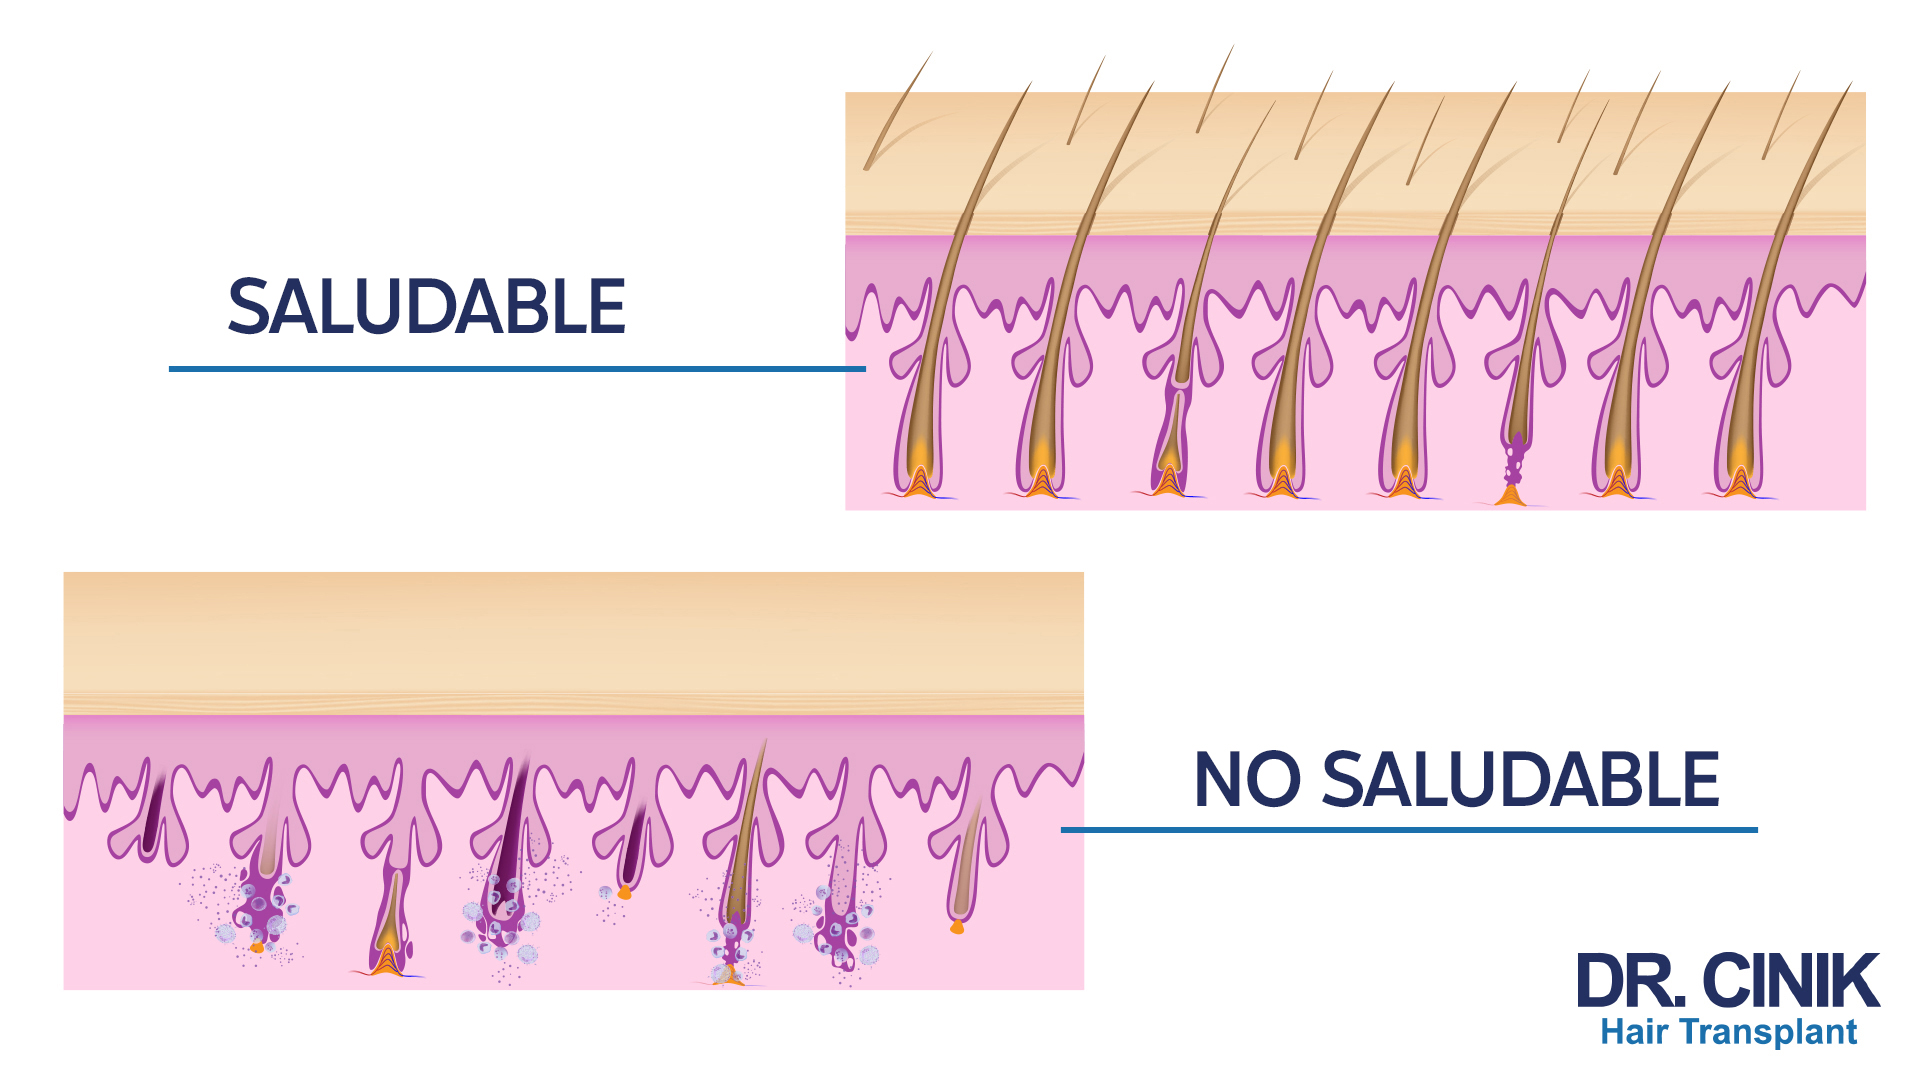 Gráfico comparativo de un cuero cabelludo afectado por alopecia areata versus un cuero cabelludo sano. La sección superior, etiquetada como 'SALUDABLE', muestra una sección transversal de un cuero cabelludo sano con mechones de cabello emergiendo de folículos pilosos intactos y una dermis sin inflamación. La sección inferior, etiquetada como 'NO SALUDABLE', muestra un cuero cabelludo afectado por alopecia areata con folículos pilosos dañados y una inflamación circundante, indicando las características áreas de pérdida de cabello de la condición. Se proporciona una representación detallada del cabello, los folículos y la piel circundante. En la esquina inferior derecha aparece el logo de 'DR. CINIK Hair Transplant'.